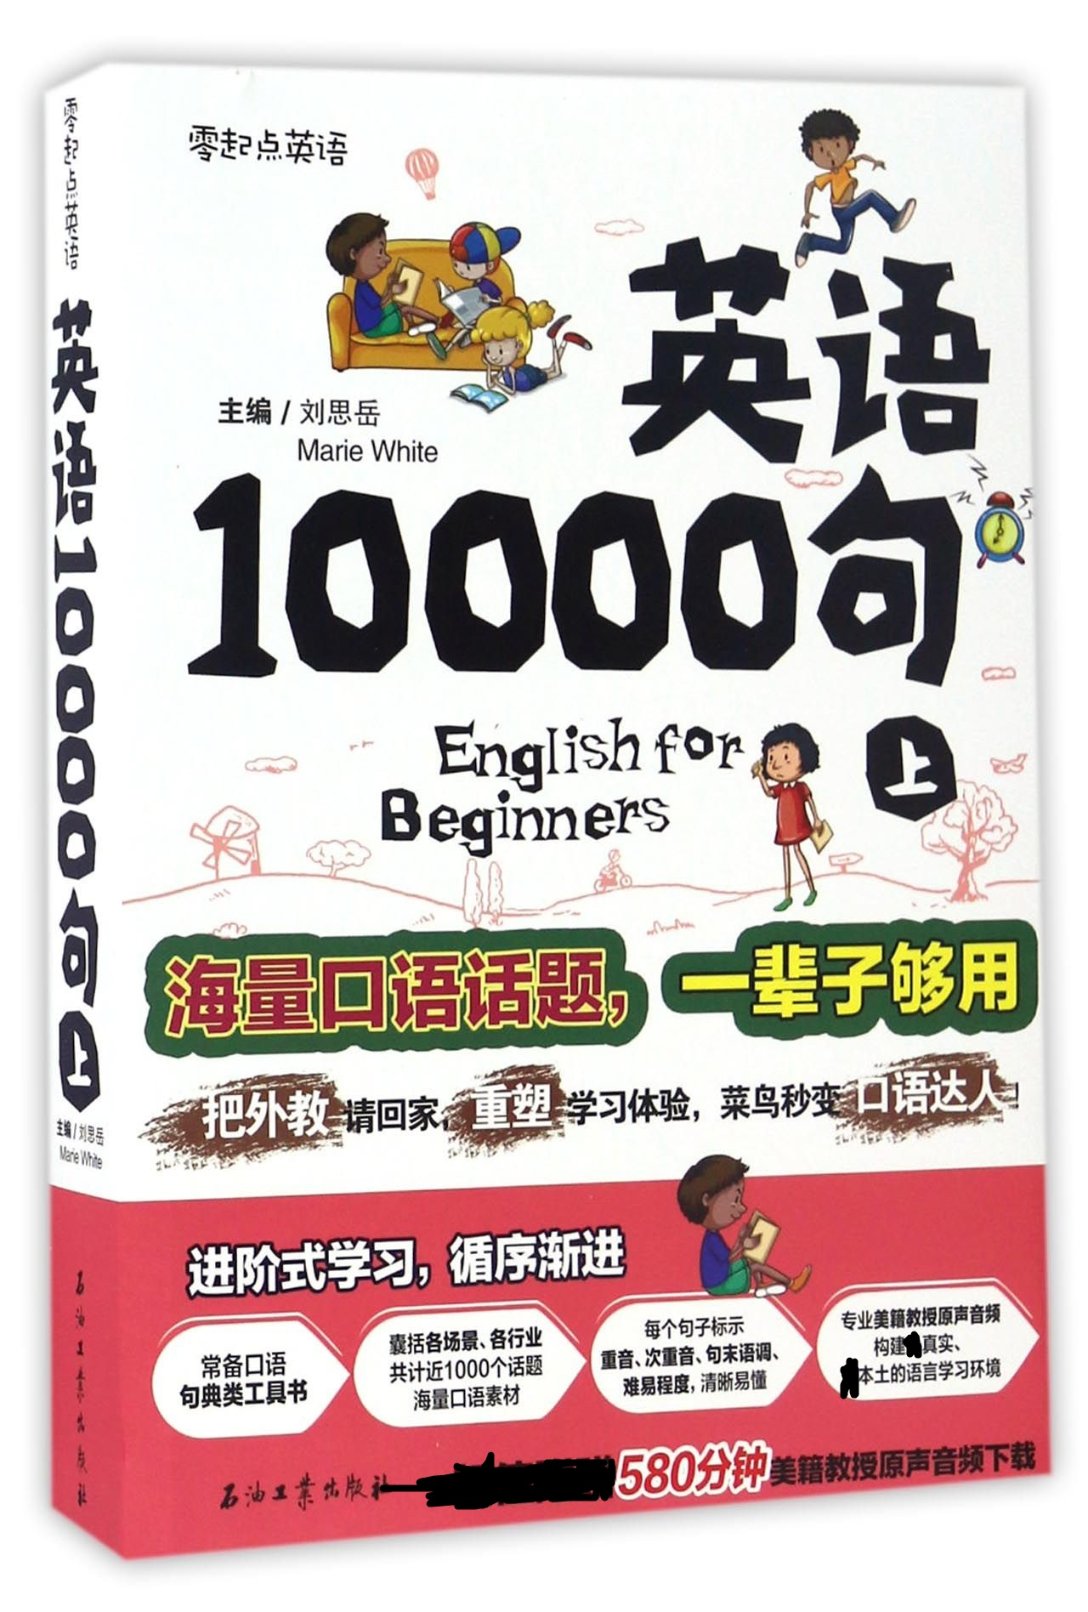 【现货】英语10000句(上)编者:刘思岳9787518316533石油工业外语/语言文字/外语/语系